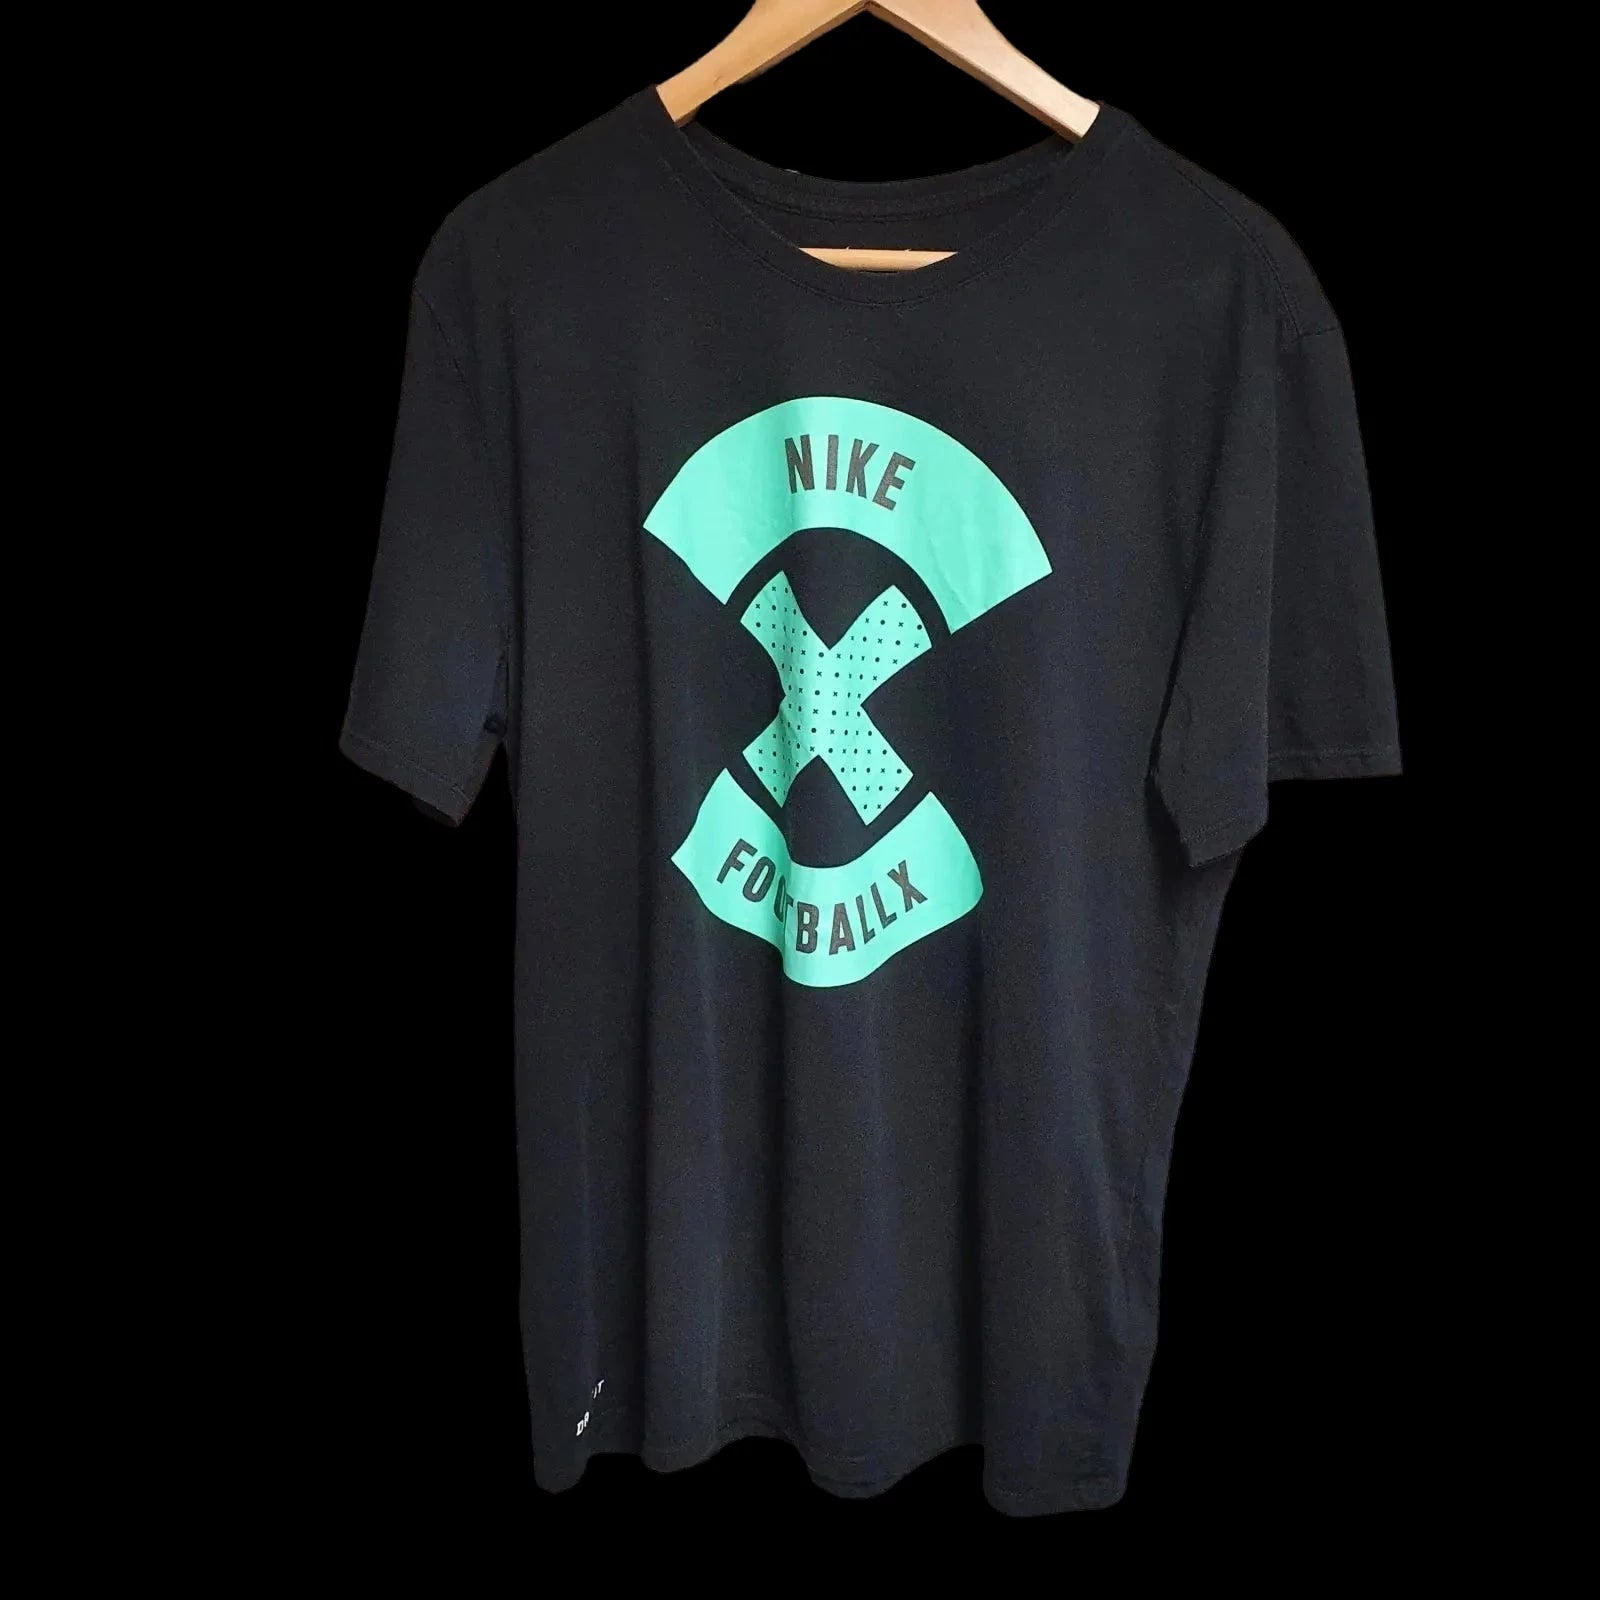 Unisex Nike Football x Black T-shirt Uk Large - T-Shirts